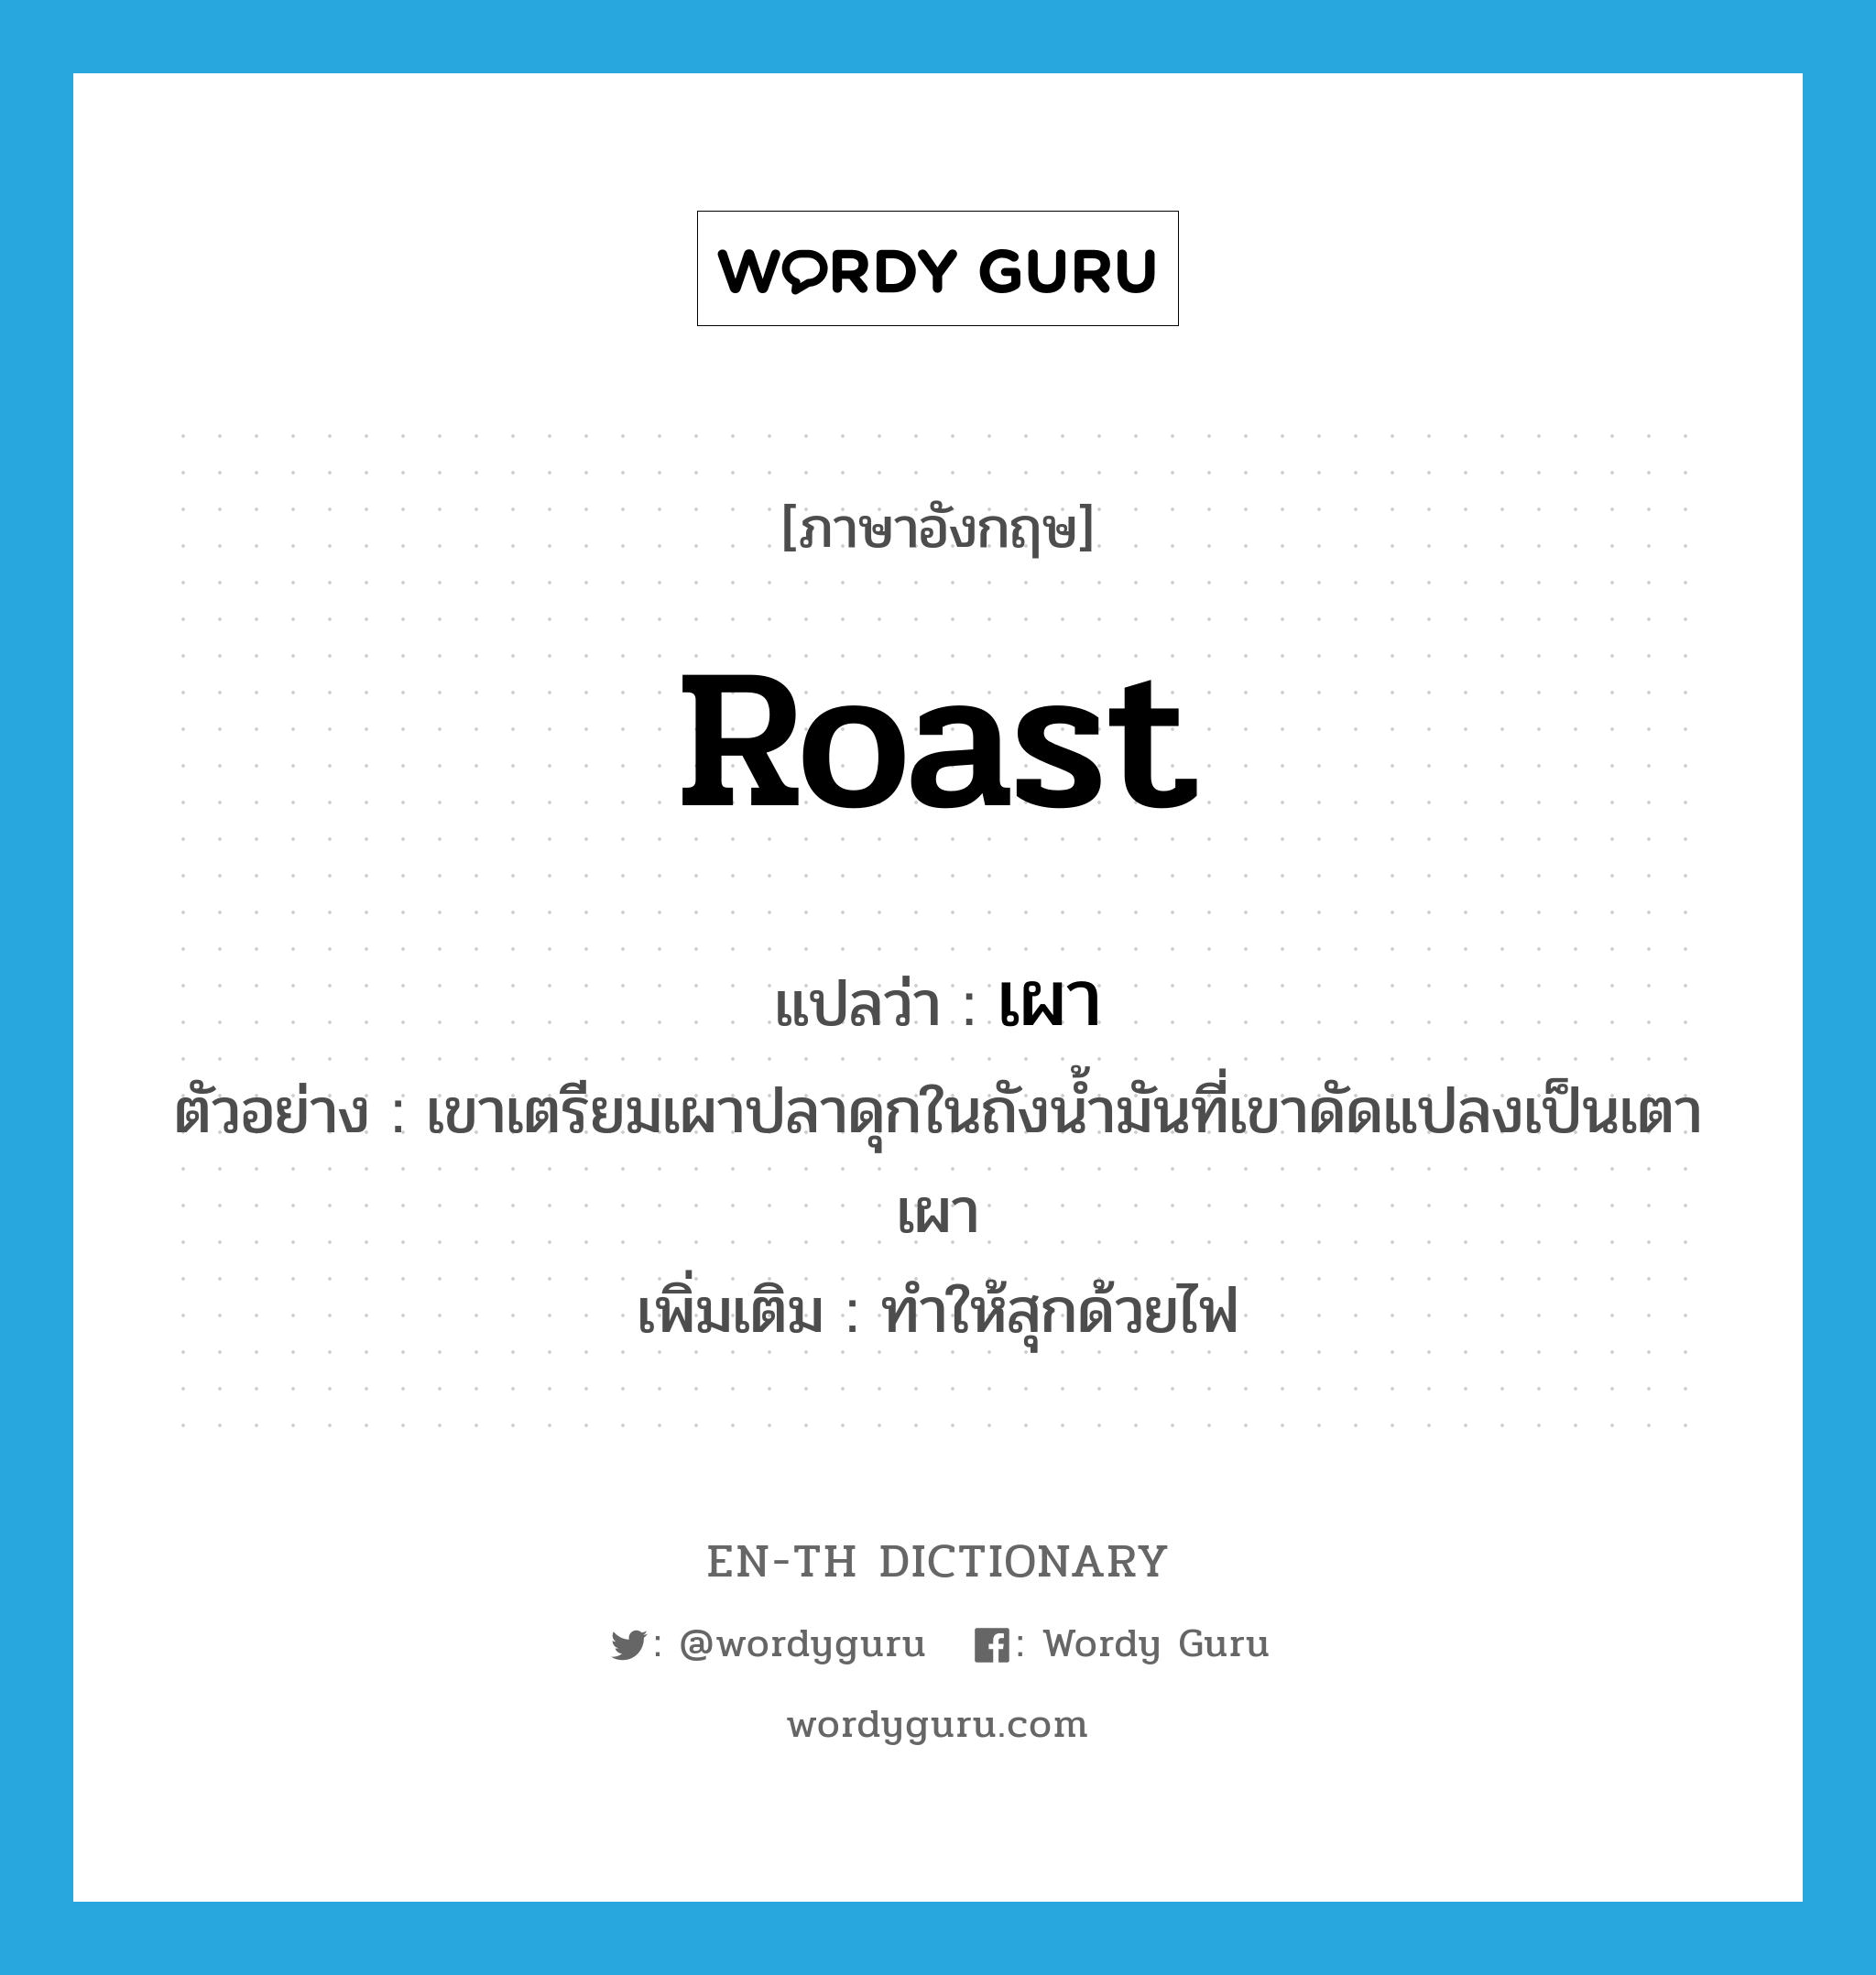 roast แปลว่า?, คำศัพท์ภาษาอังกฤษ roast แปลว่า เผา ประเภท V ตัวอย่าง เขาเตรียมเผาปลาดุกในถังน้ำมันที่เขาดัดแปลงเป็นเตาเผา เพิ่มเติม ทําให้สุกด้วยไฟ หมวด V